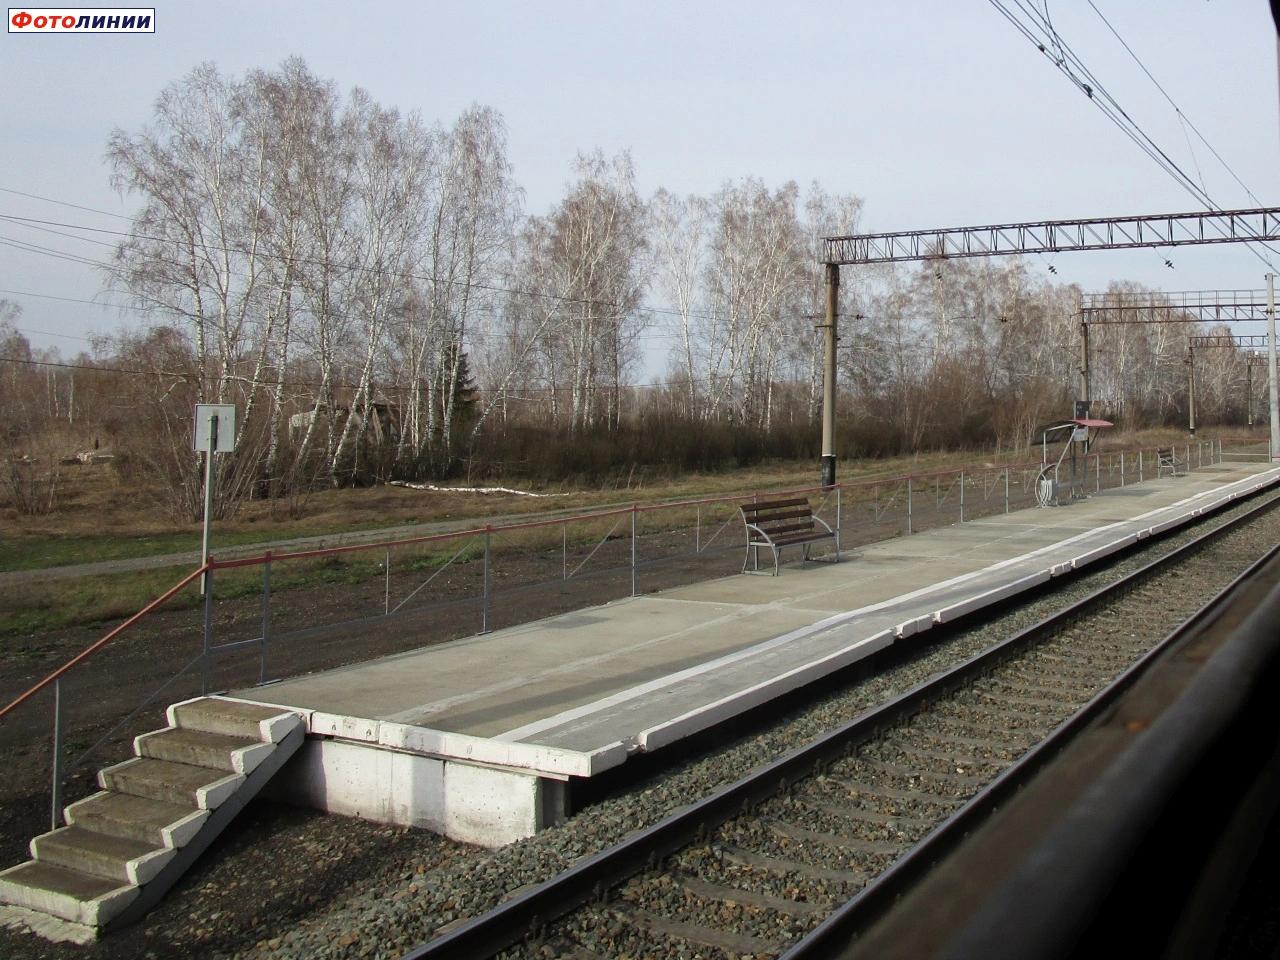 Платформа нечётного направления (на Болотную, Новосибирск)